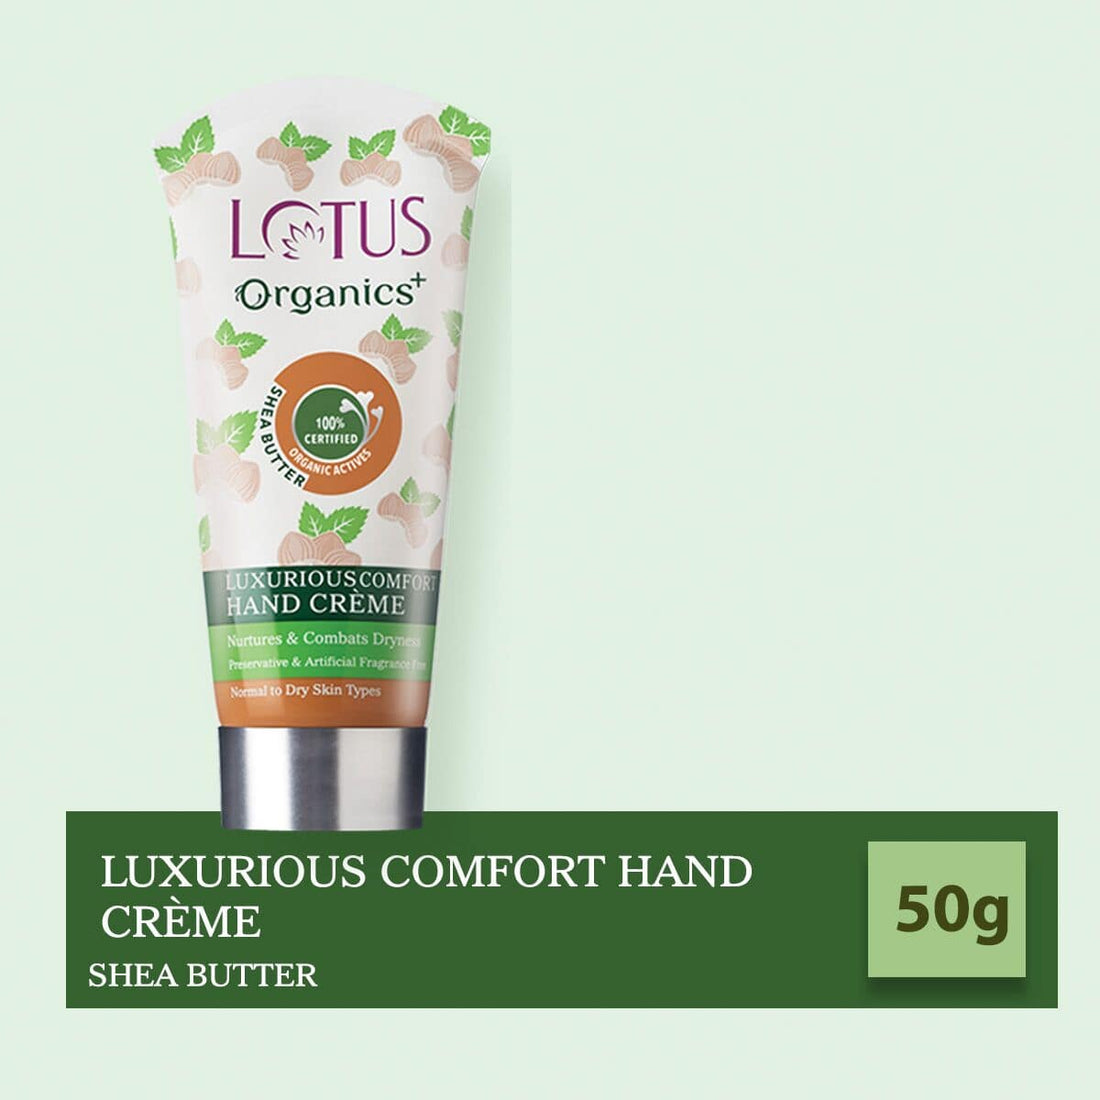 Luxurious Comfort Hand Creme (Shea Butter) ShopLotusOrganic